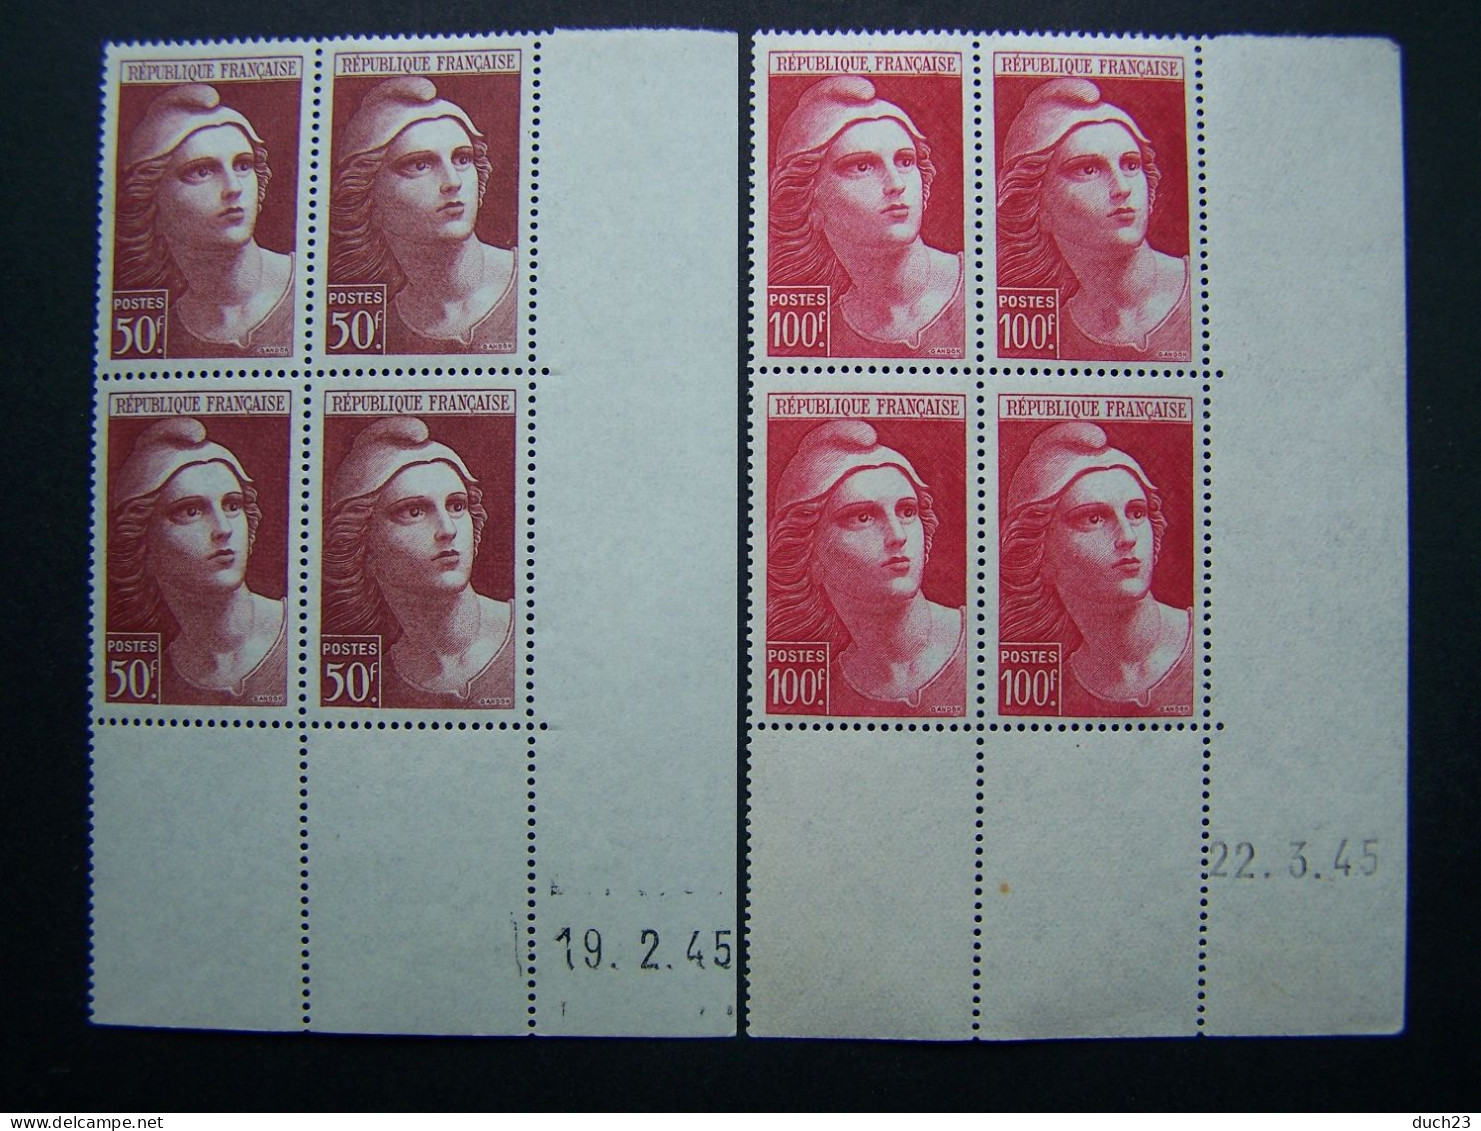 FRANCE NEUF ** SANS CHARNIERE N°732-733 MARIANNE DE GANDON LOT DE 2 COINS DATES COIN DATE 19.2.45 Et 22.3.45 1945 - 1940-1949